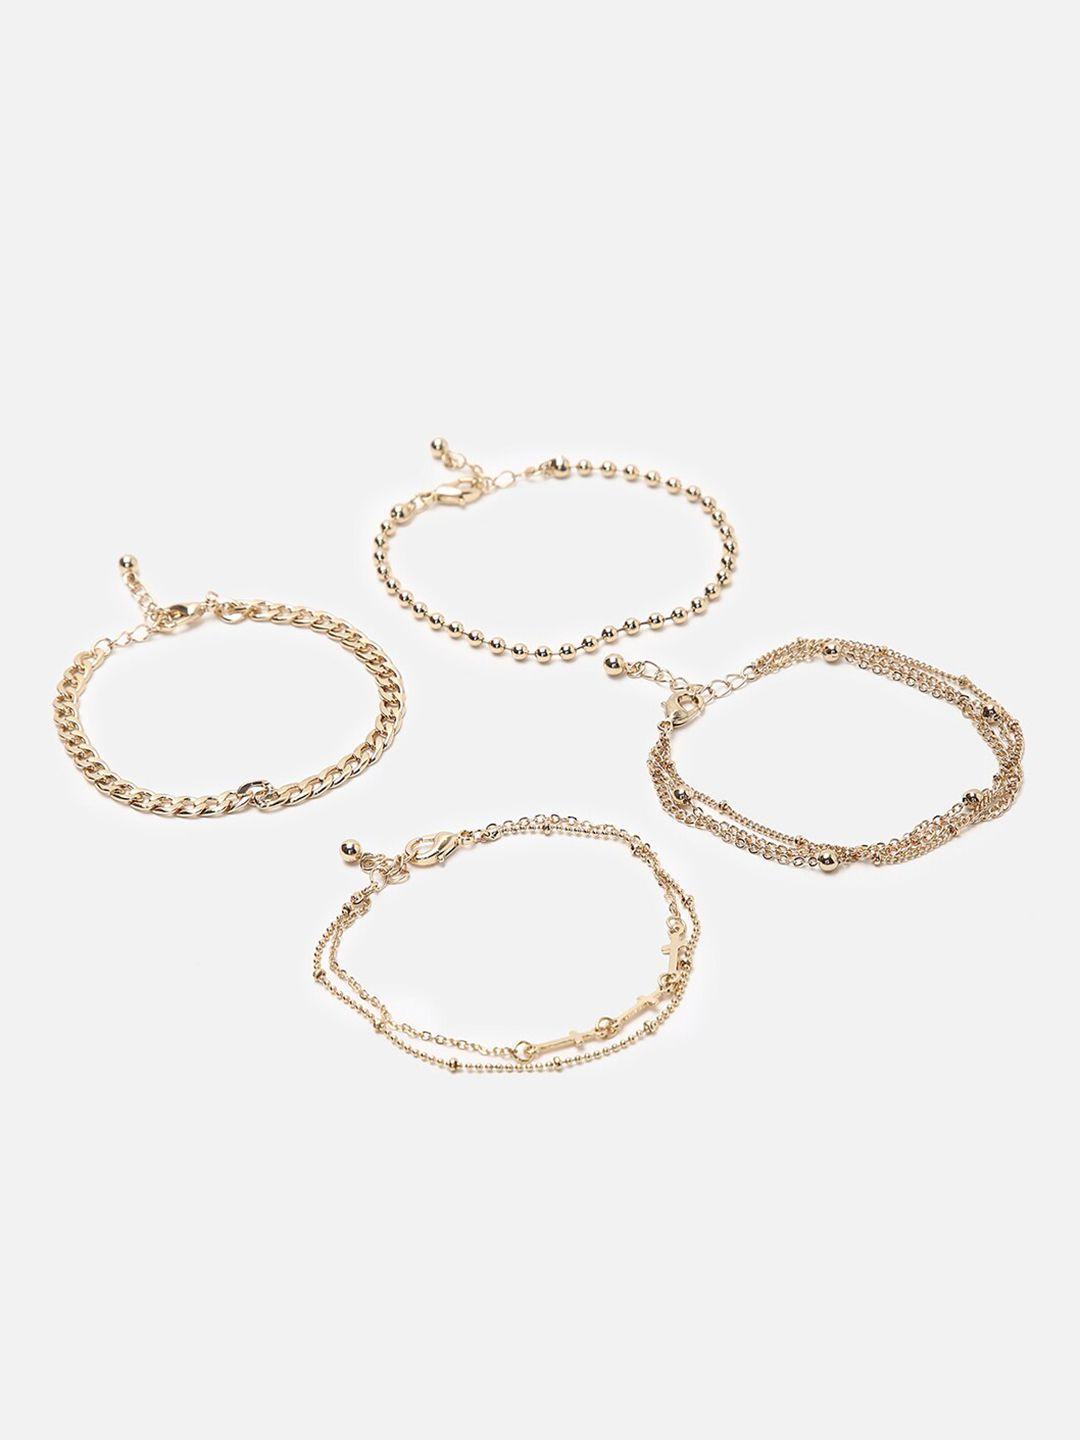 forever-21-set-of-4-gold-toned-silver-link-bracelets